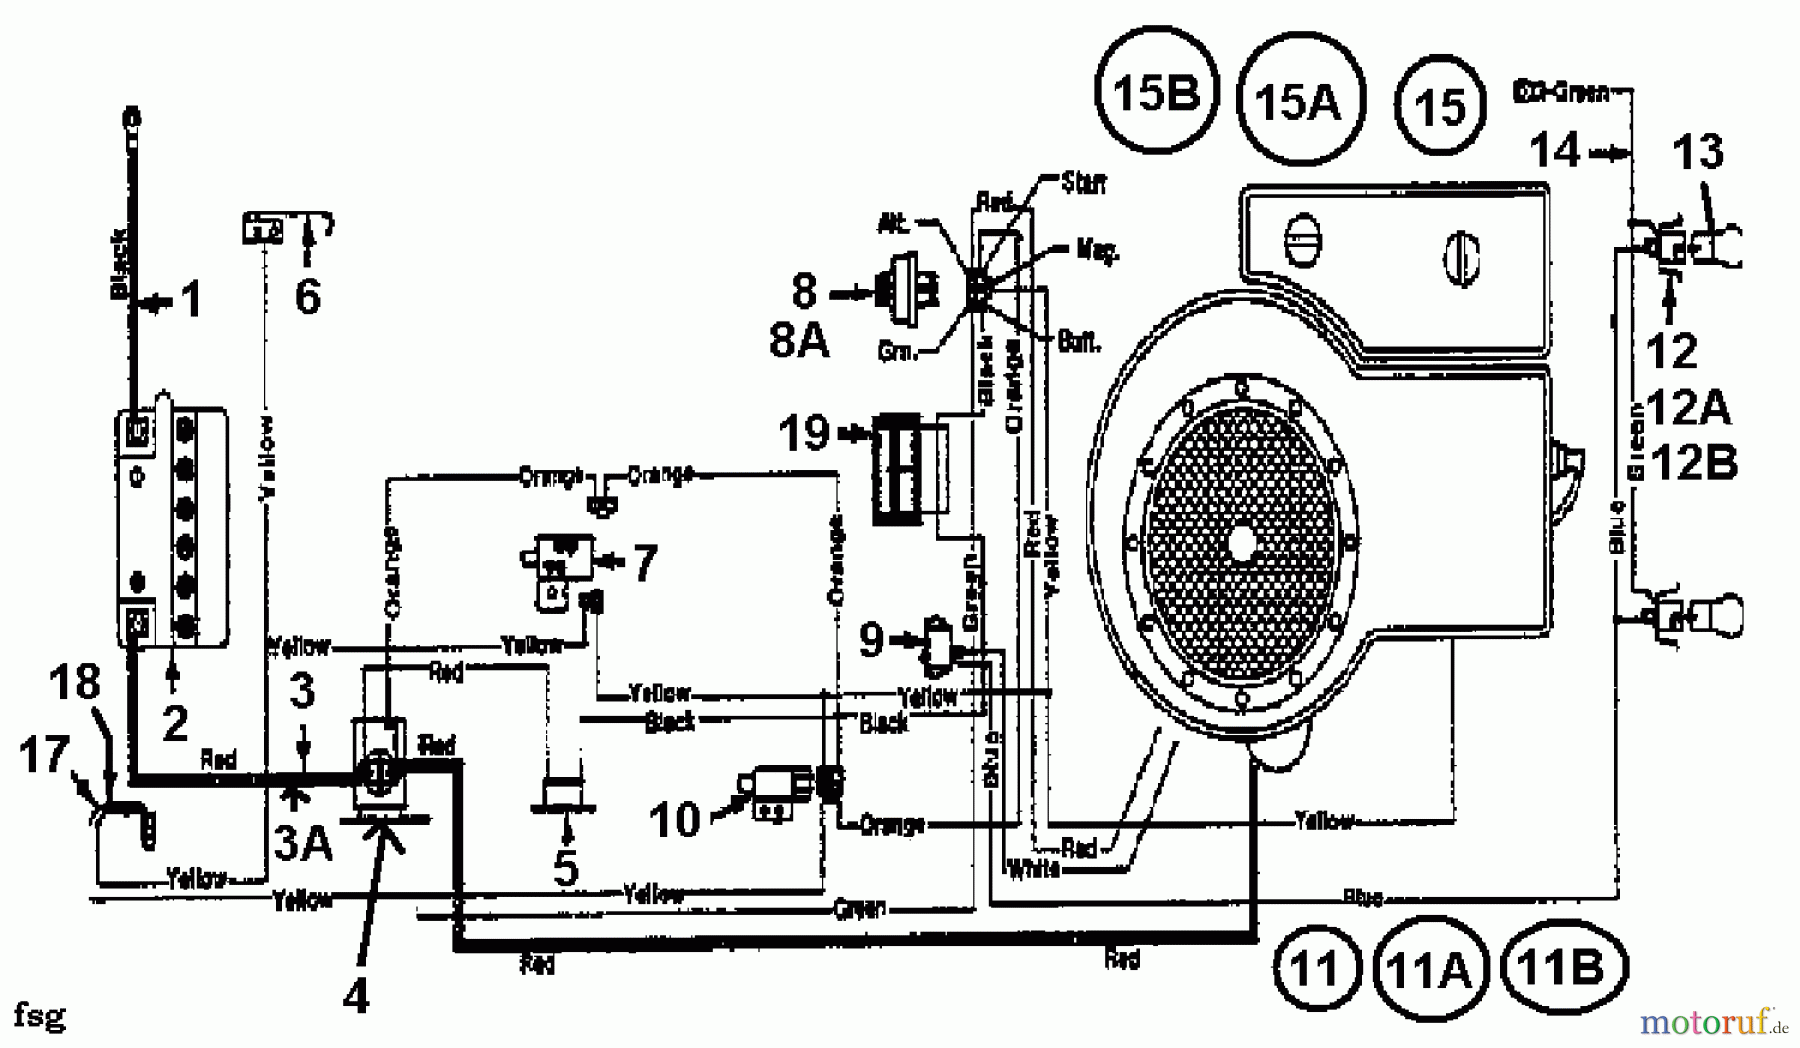  Bauhaus Tracteurs de pelouse Gardol Topcut 12/91 133I471E646  (1993) Plan électrique cylindre simple